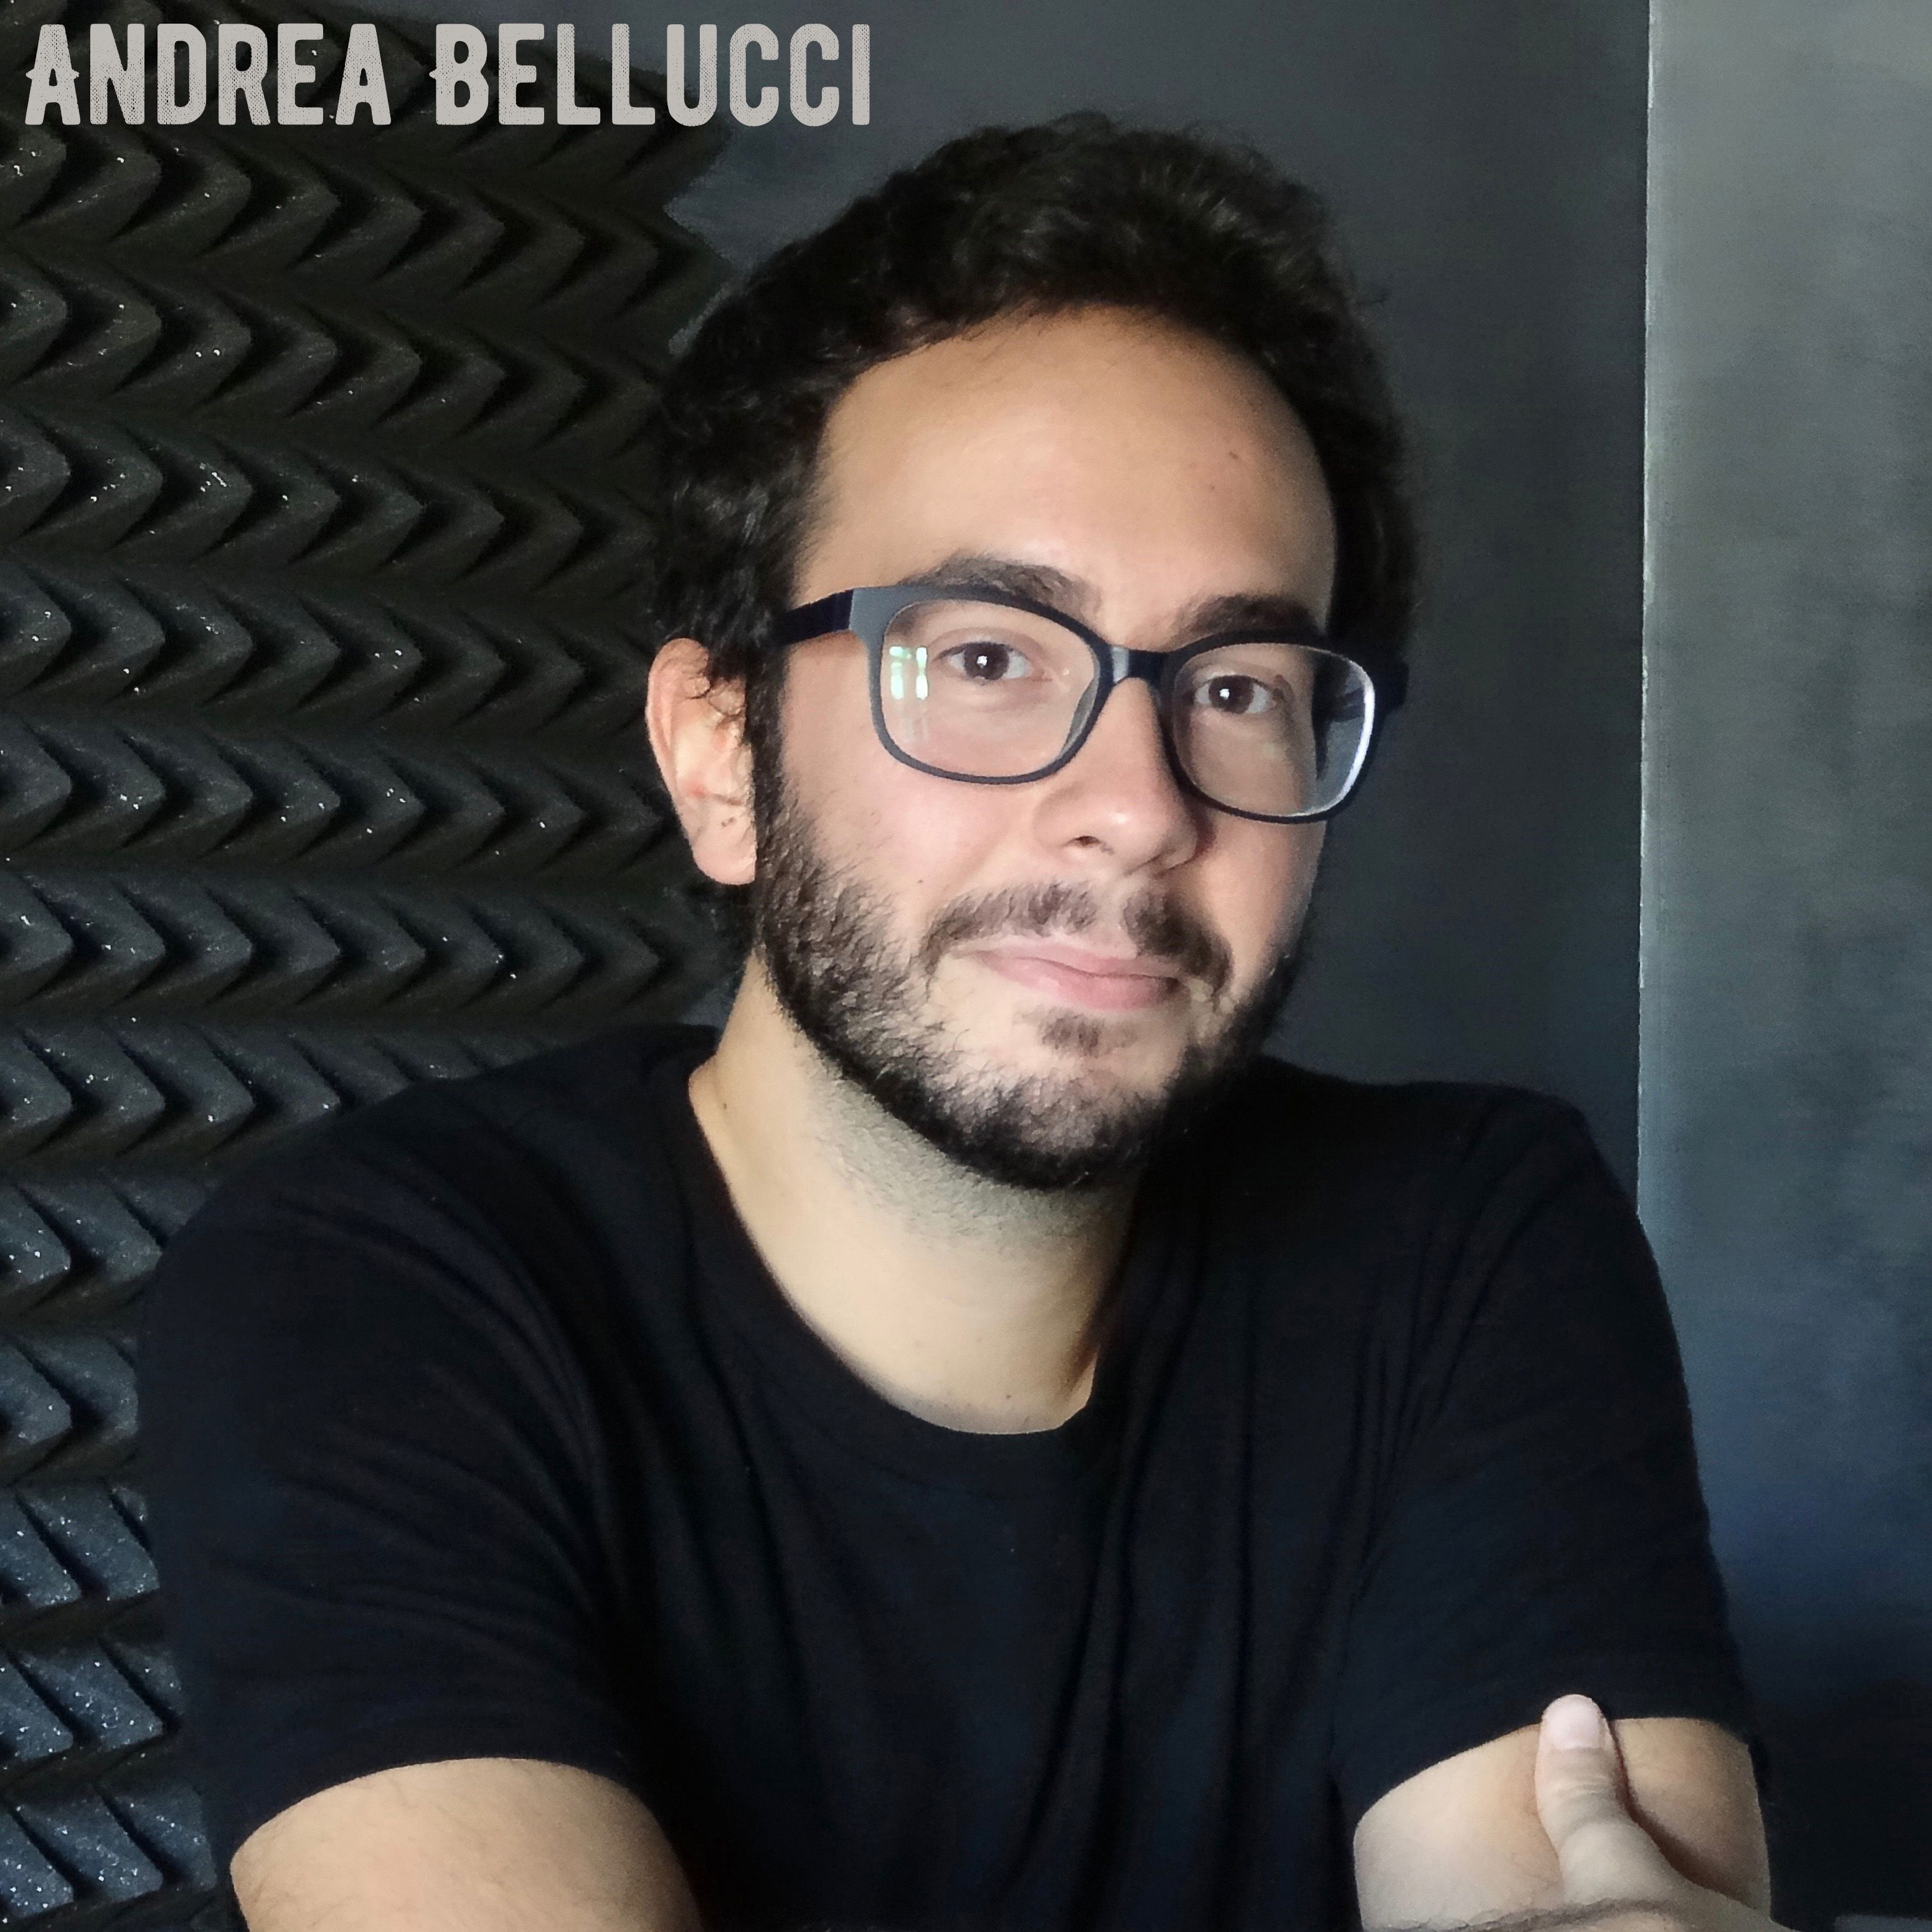 Andrea Bellucci